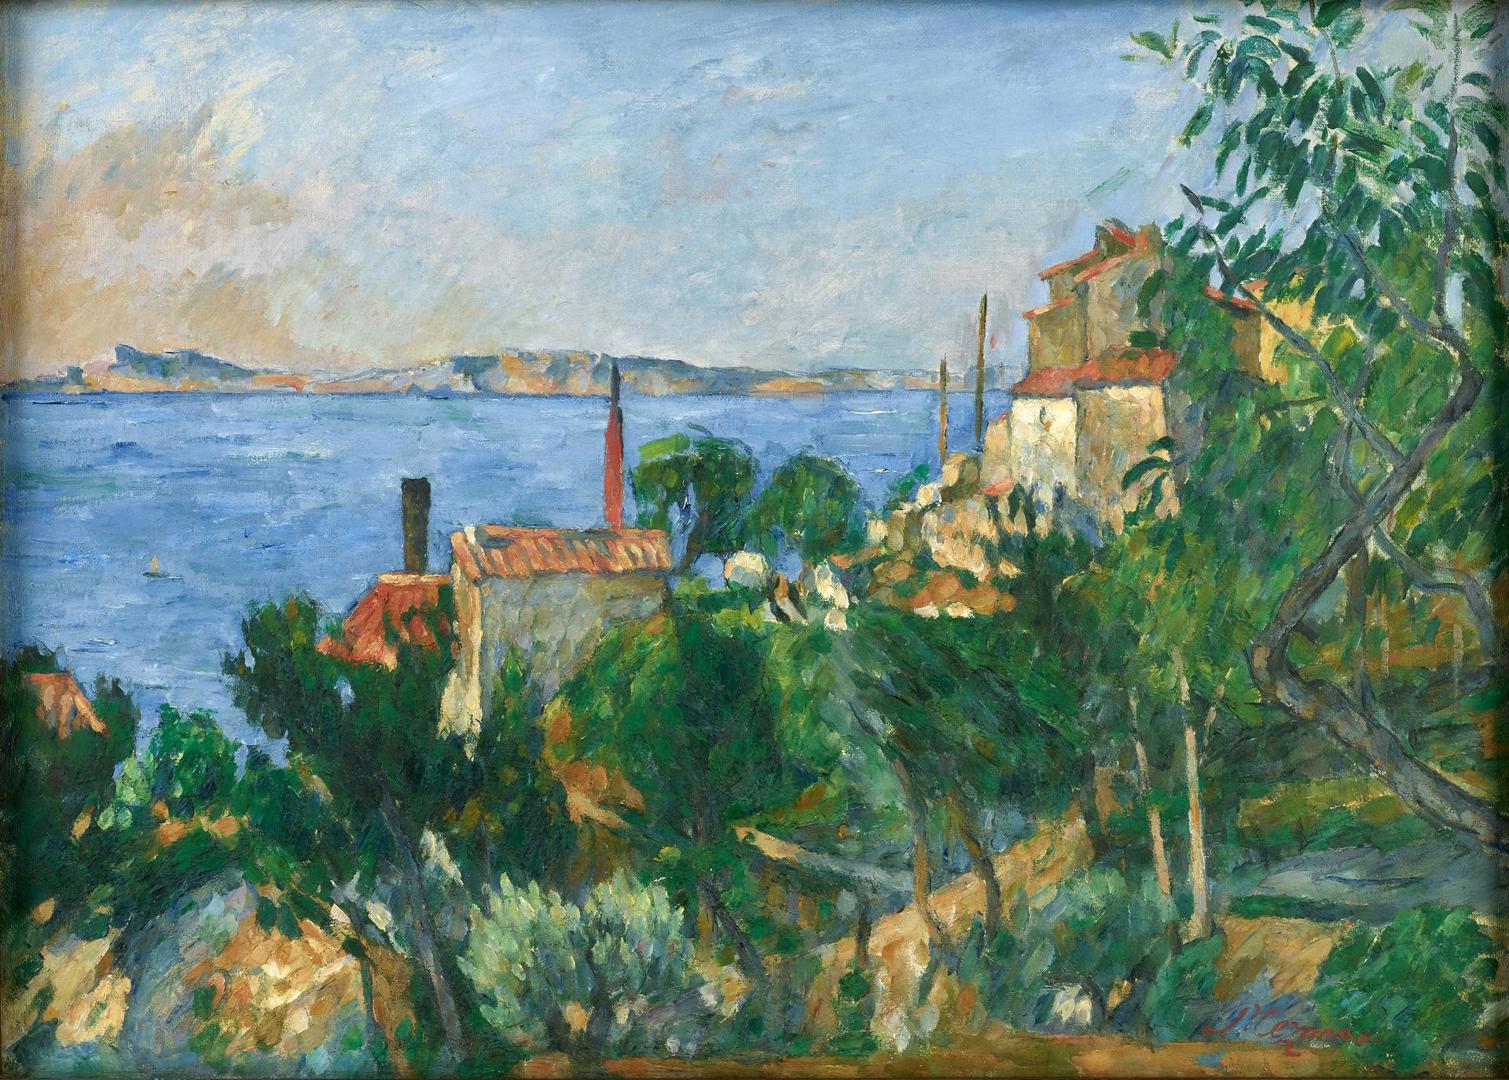 The Sea at L'Estaque by Paul Cezanne